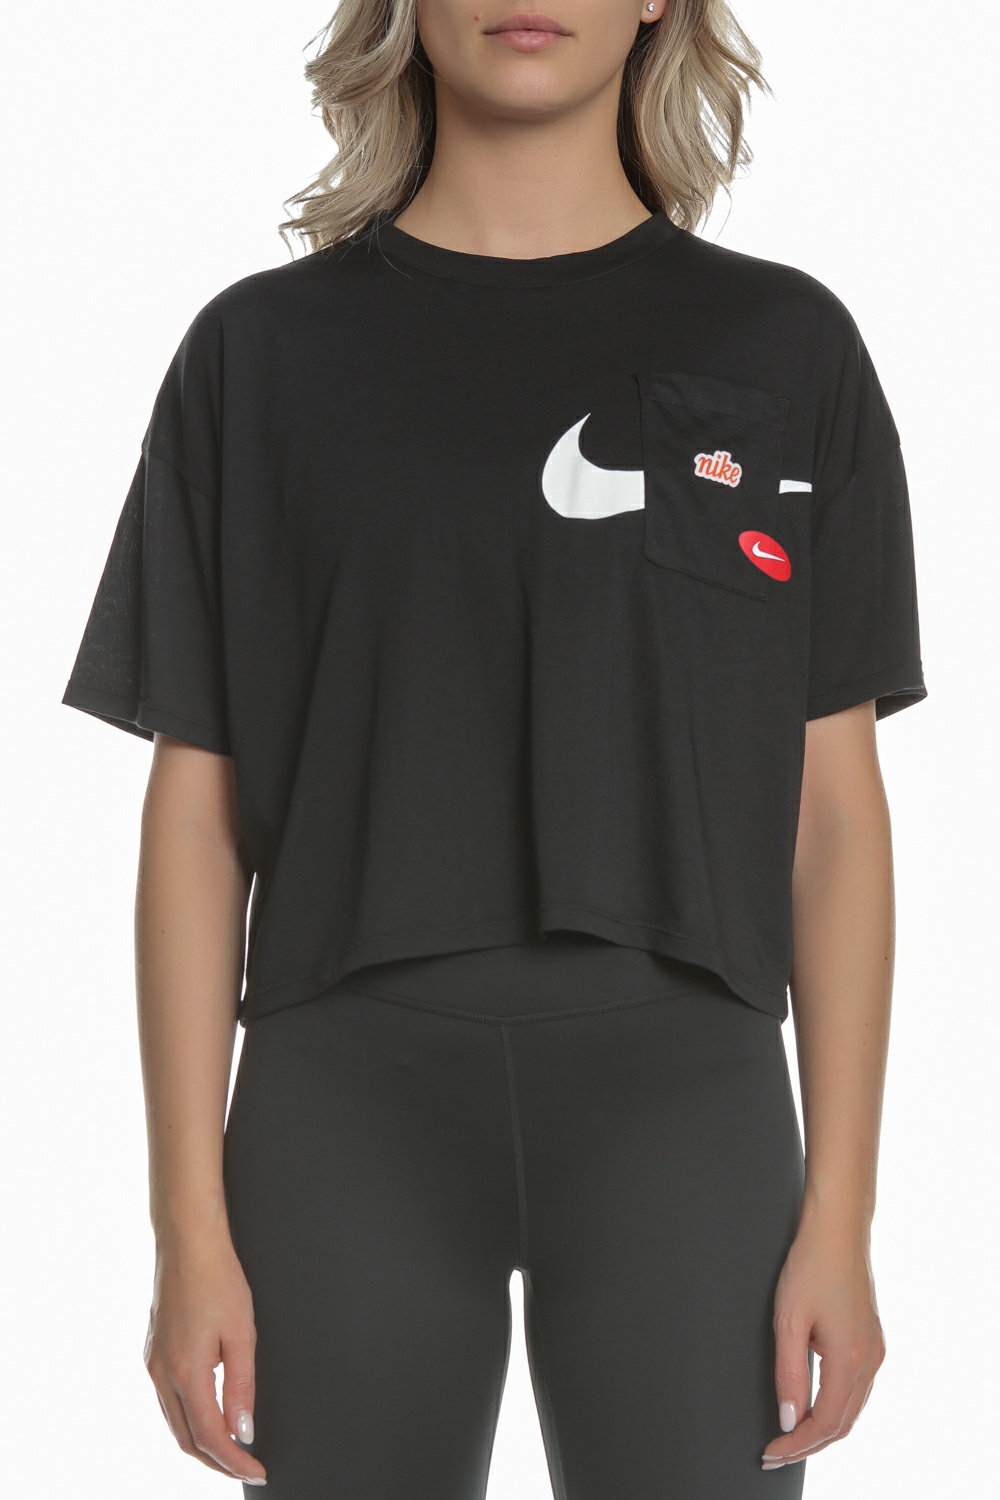 Γυναικεία/Ρούχα/Αθλητικά/T-shirt-Τοπ NIKE - Γυναικείο cropped top NIKE GX ICNCLSH WOW μαύρο